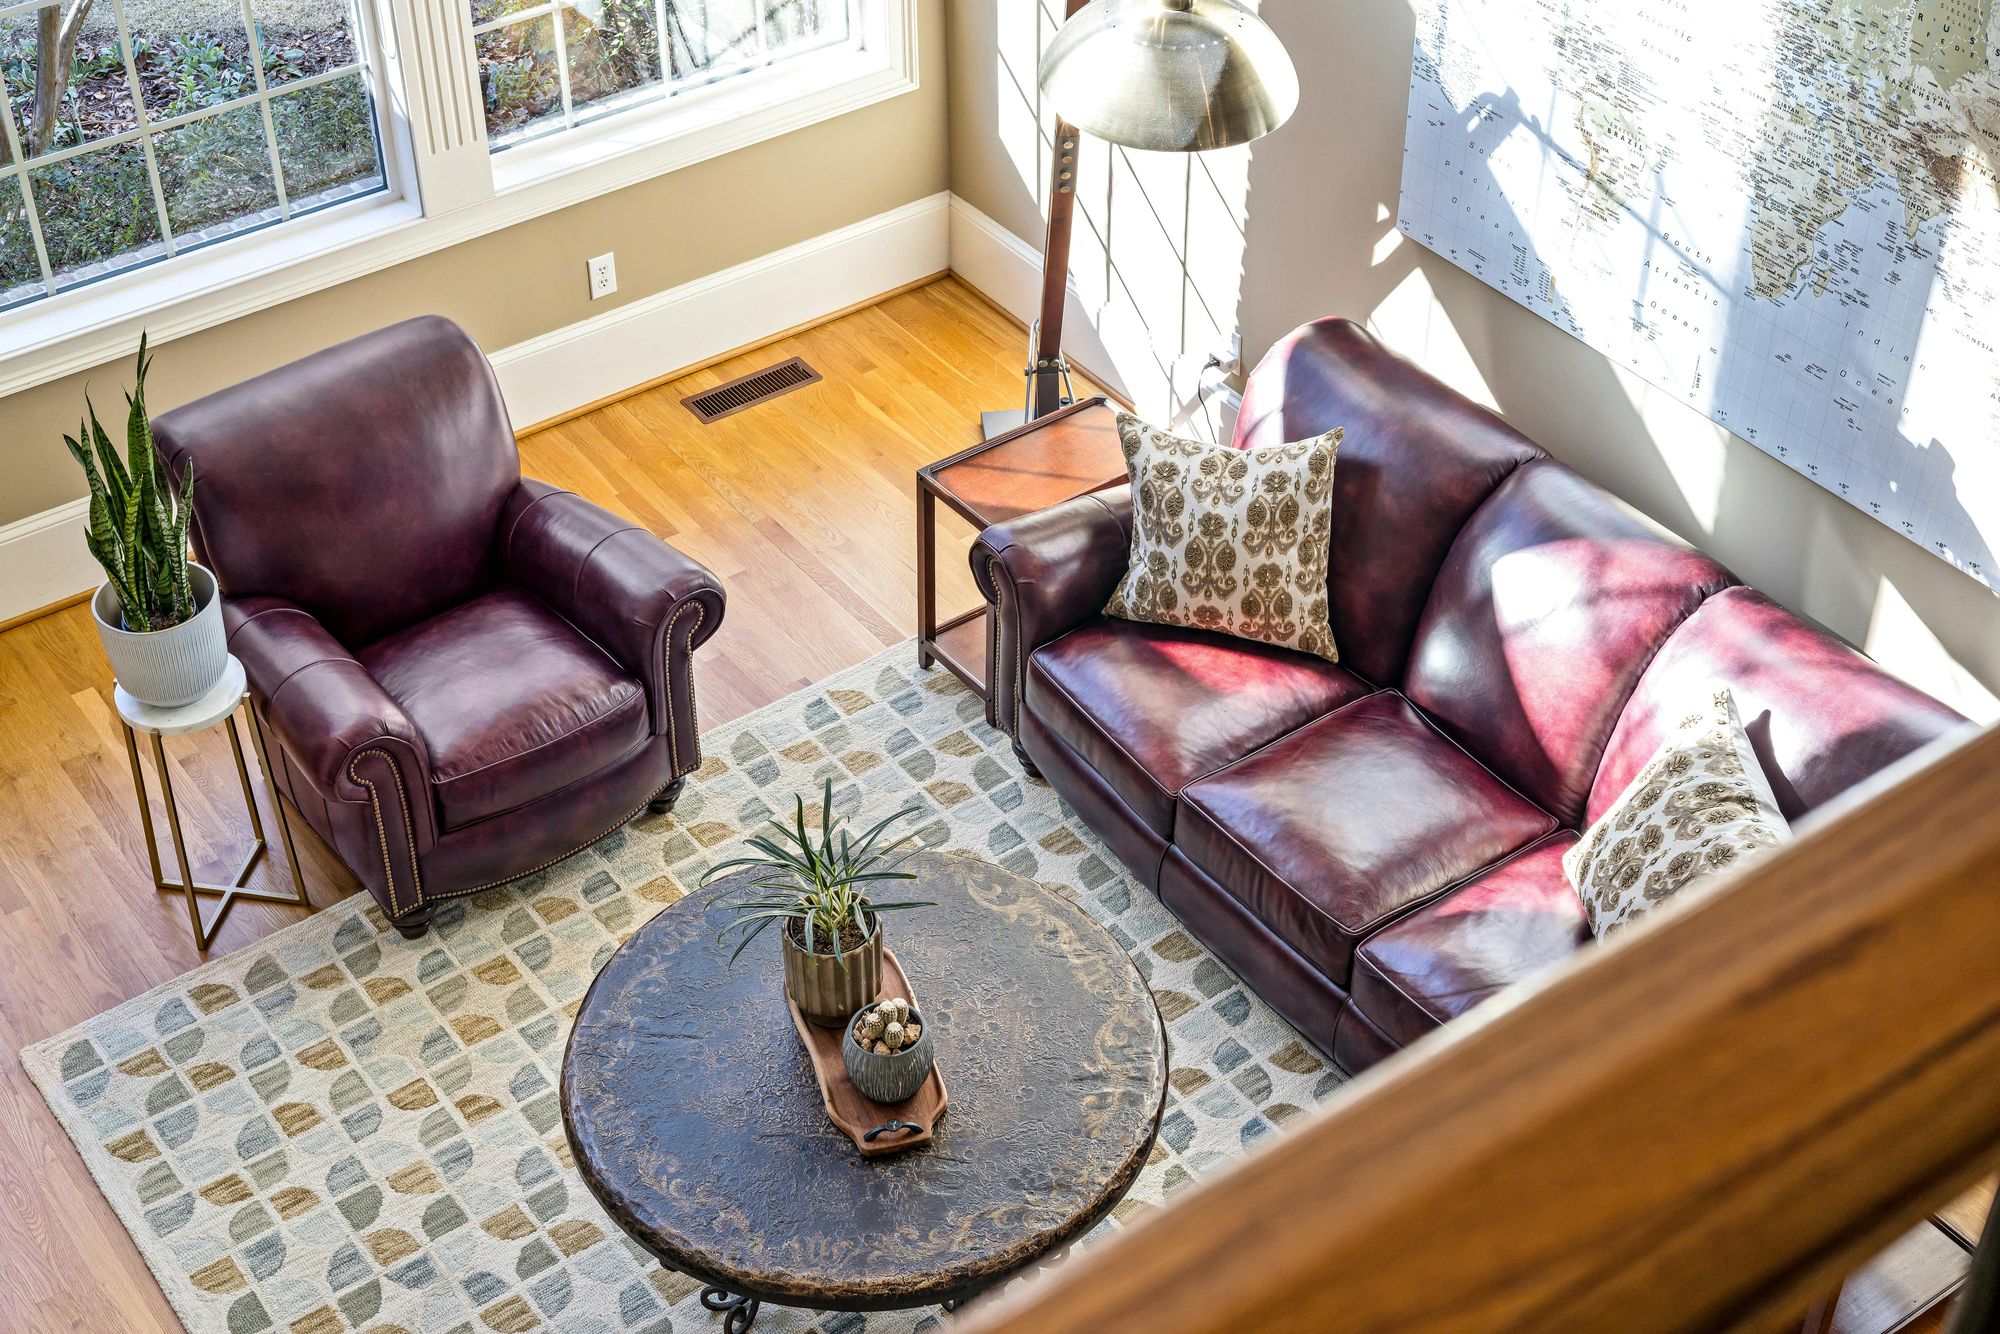 Vista superior de um aconchegante mezanino com piso de madeira, mobiliado com sofá e poltrona de couro vinho, uma mesa de centro redonda rústica, e plantas decorativas. Foto: Curtis Adams no Pexels